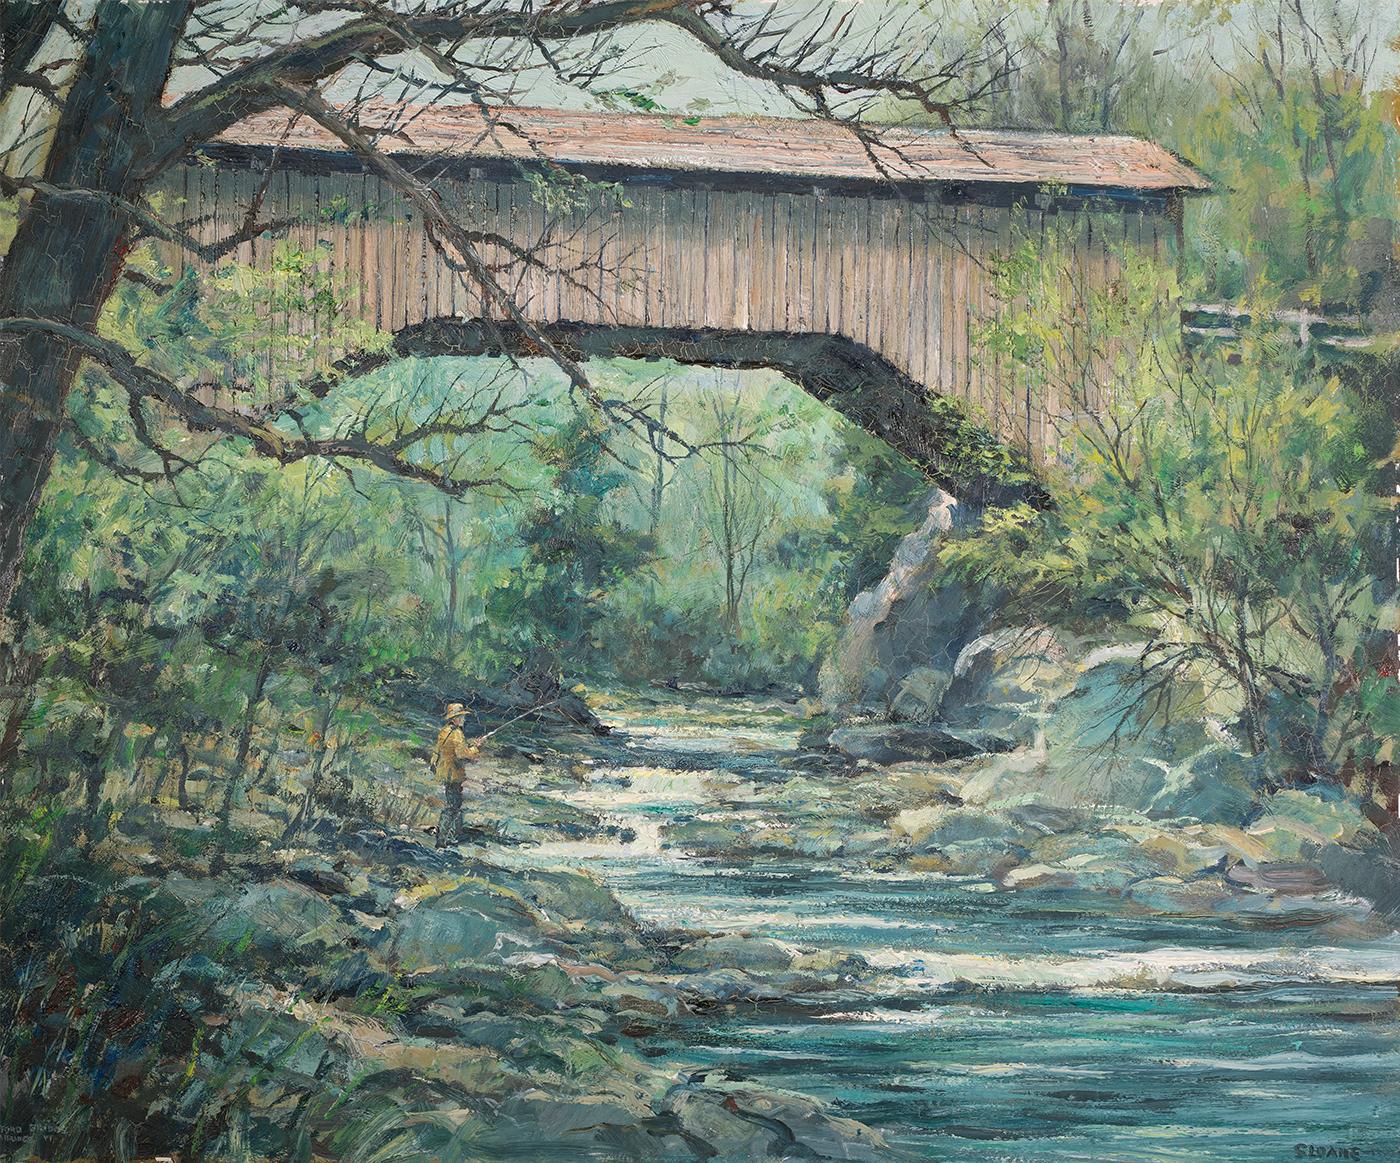 Landscape Painting Eric Sloane - Fishing en dessous d'un pont couvert, Vermont